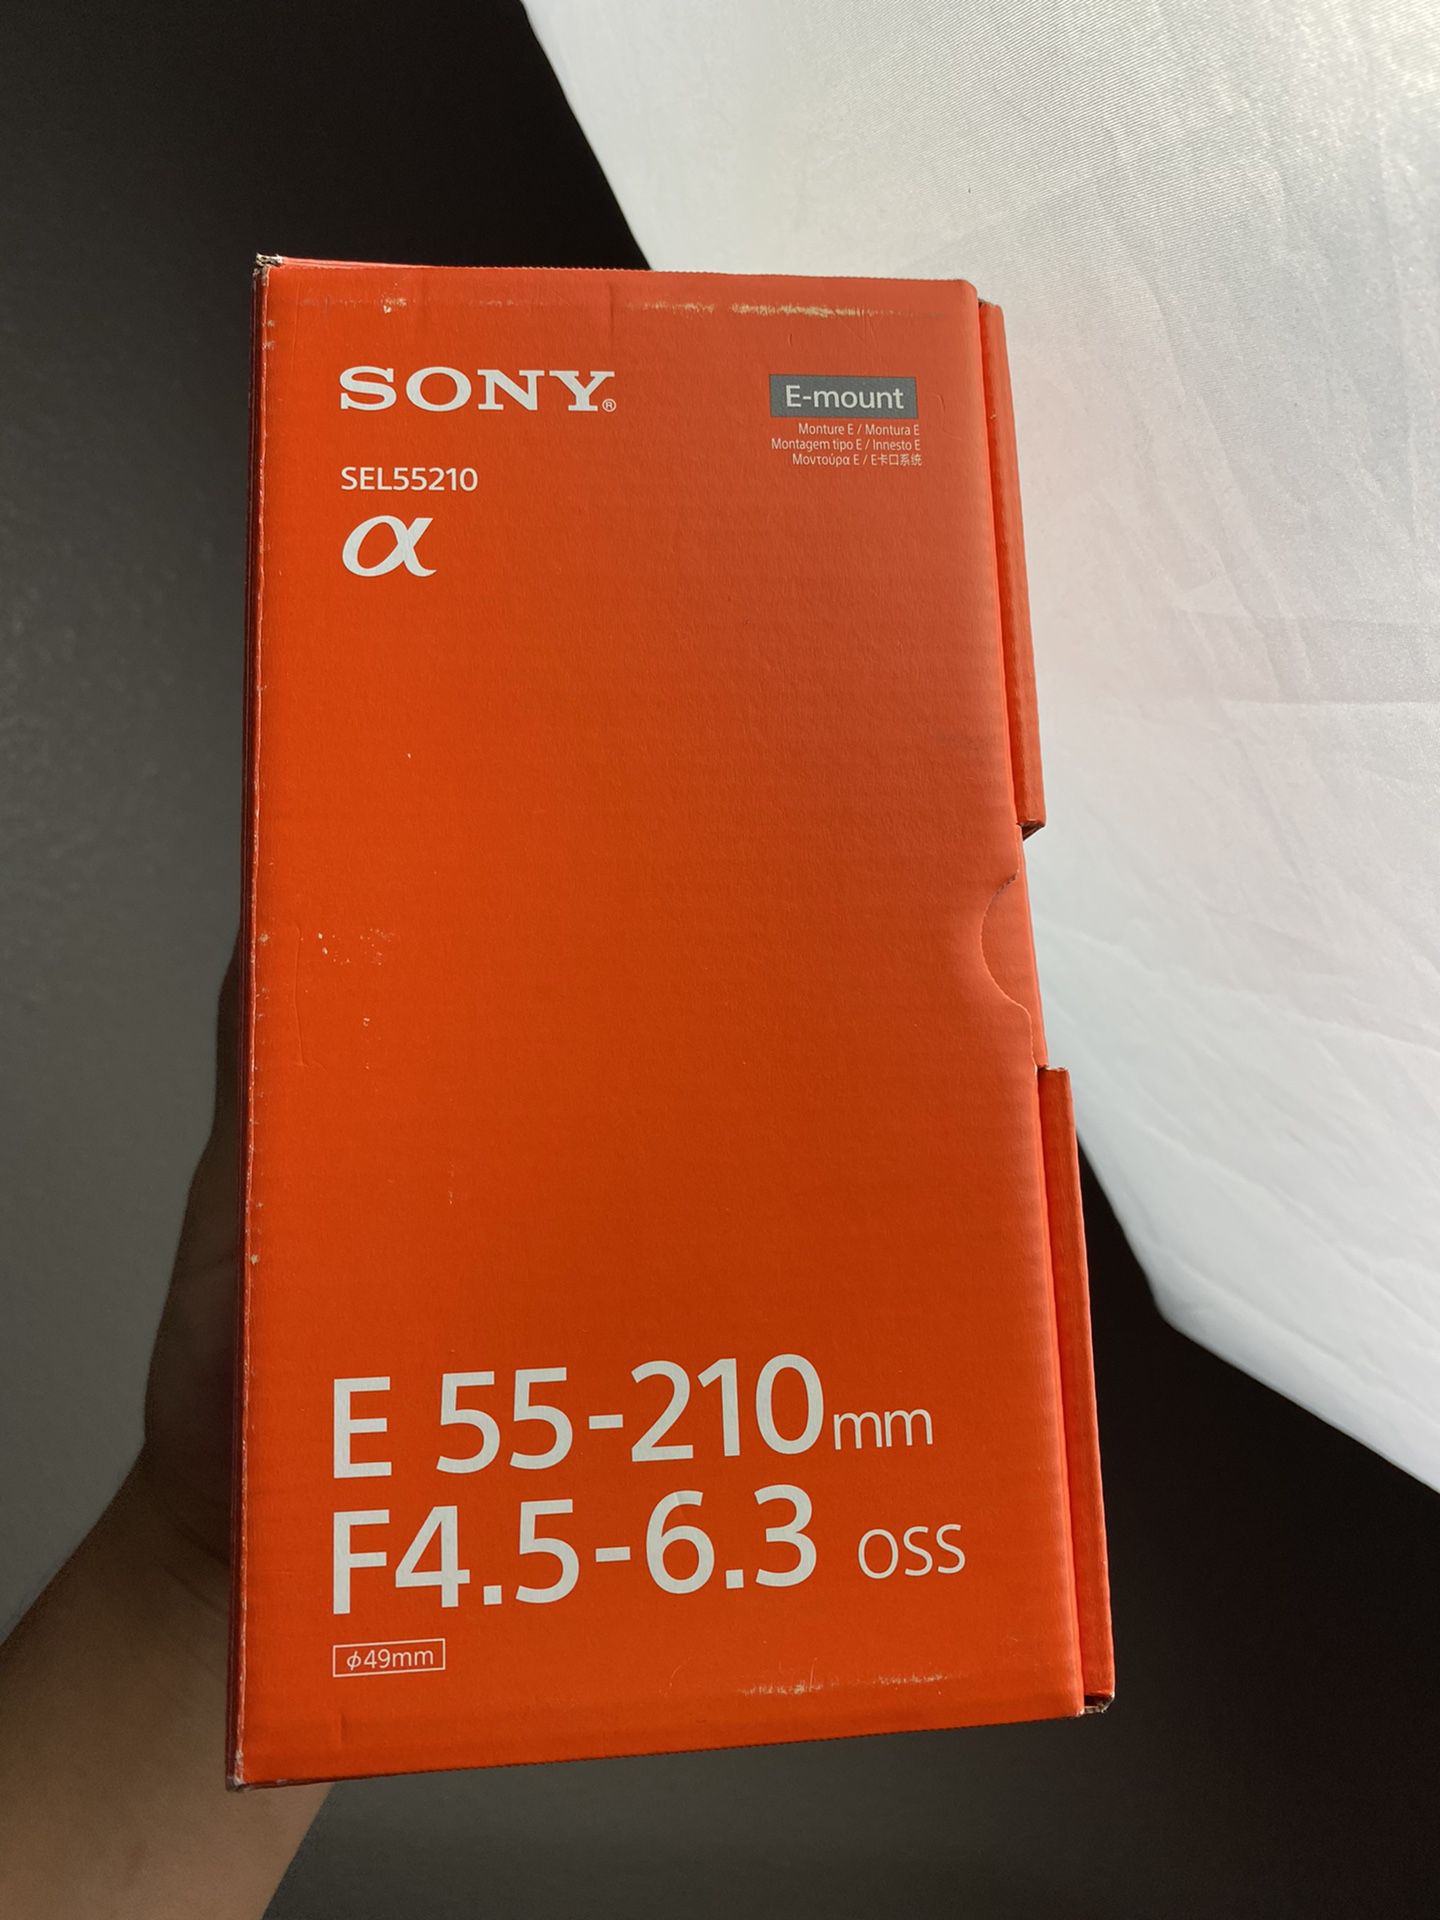 Sony Kit Lens Zoom 55-210mm